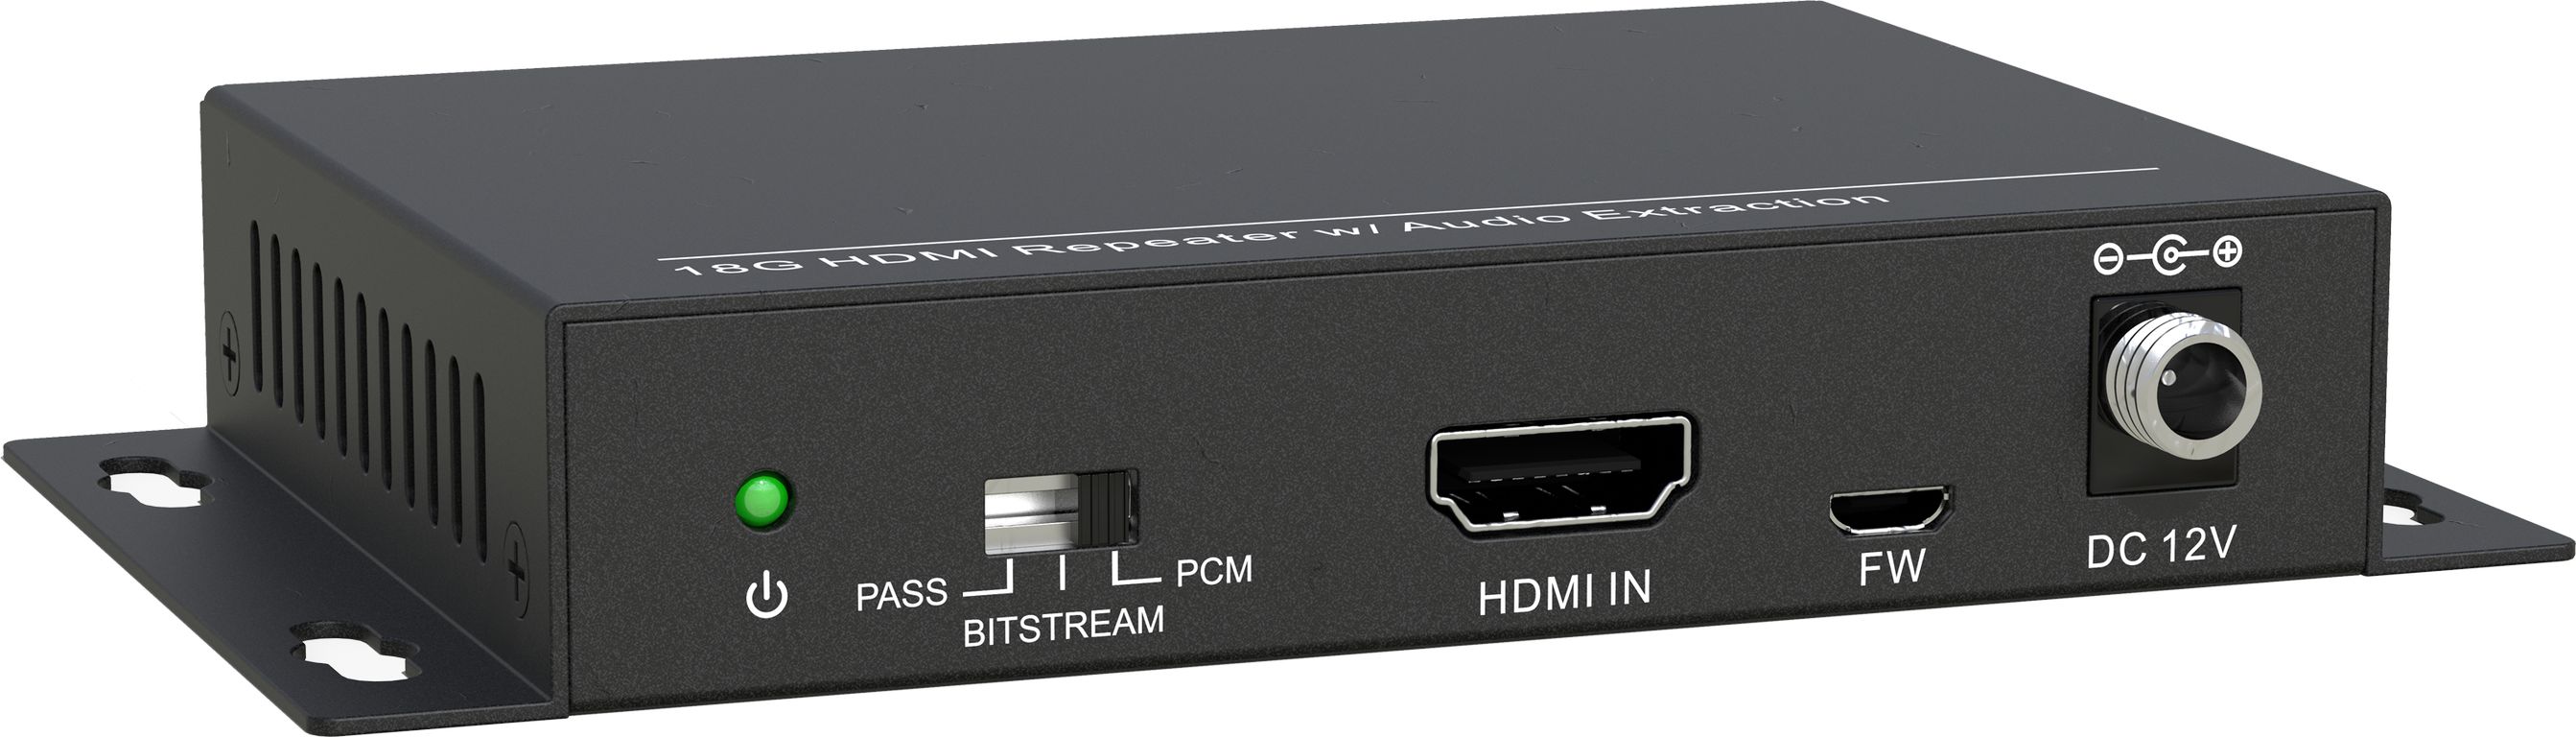 HDMI коммутаторы, разветвители, повторители Digis SS-AC1-4K2 hdmi коммутаторы разветвители повторители wyrestorm mx 0404 scl